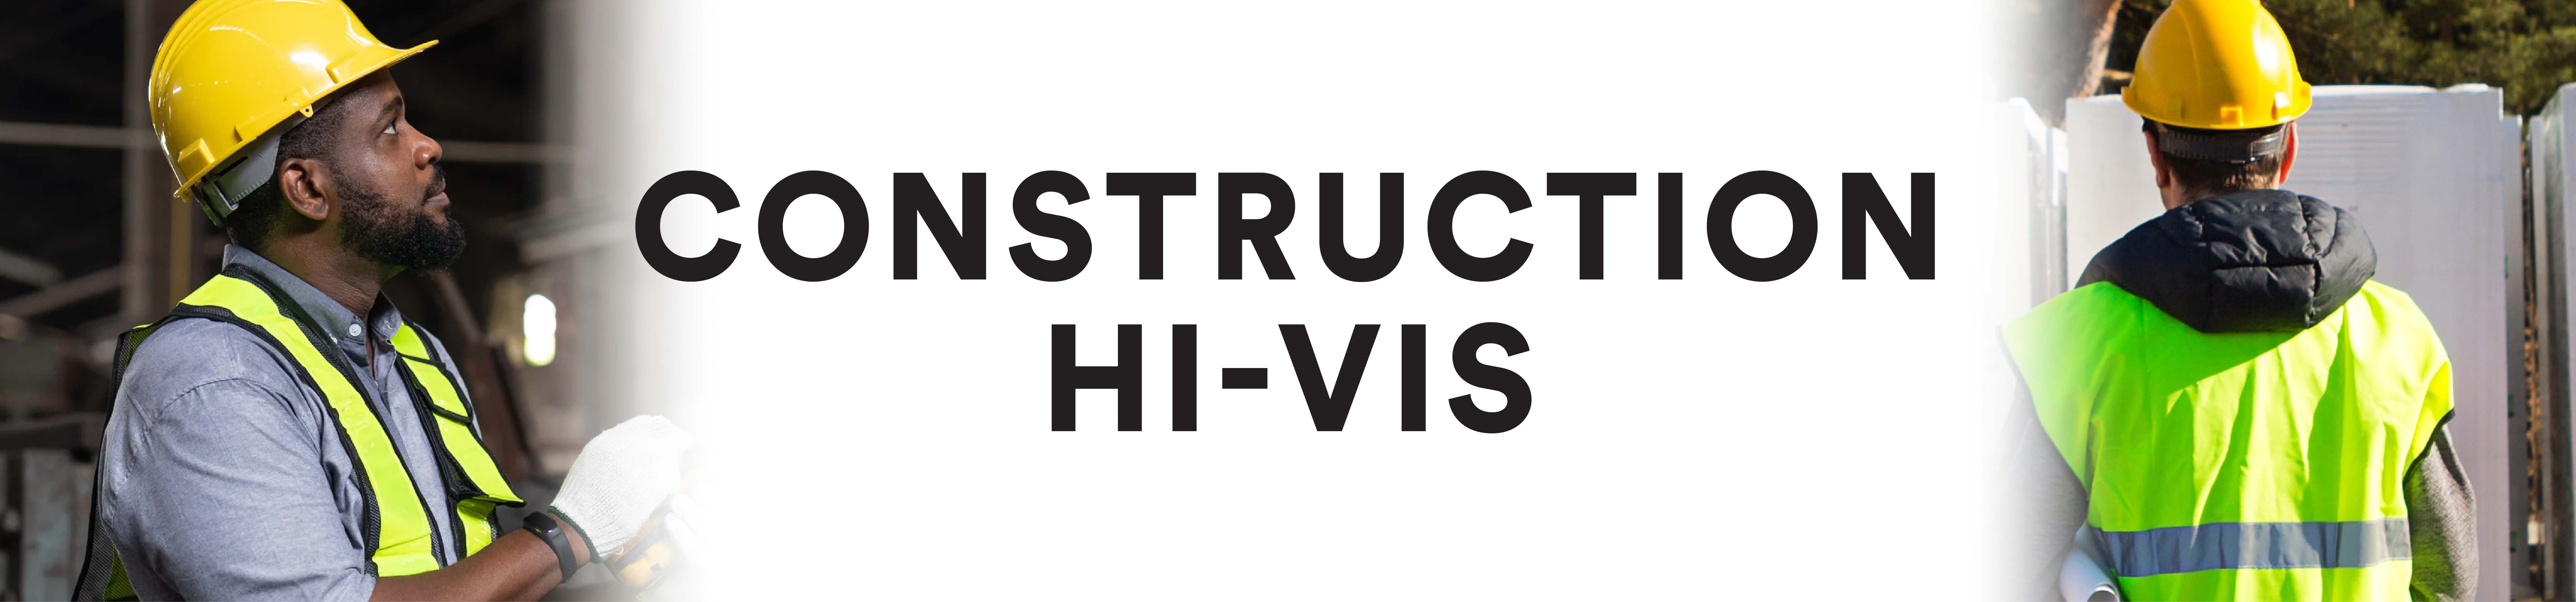 Construction Hi-Vis